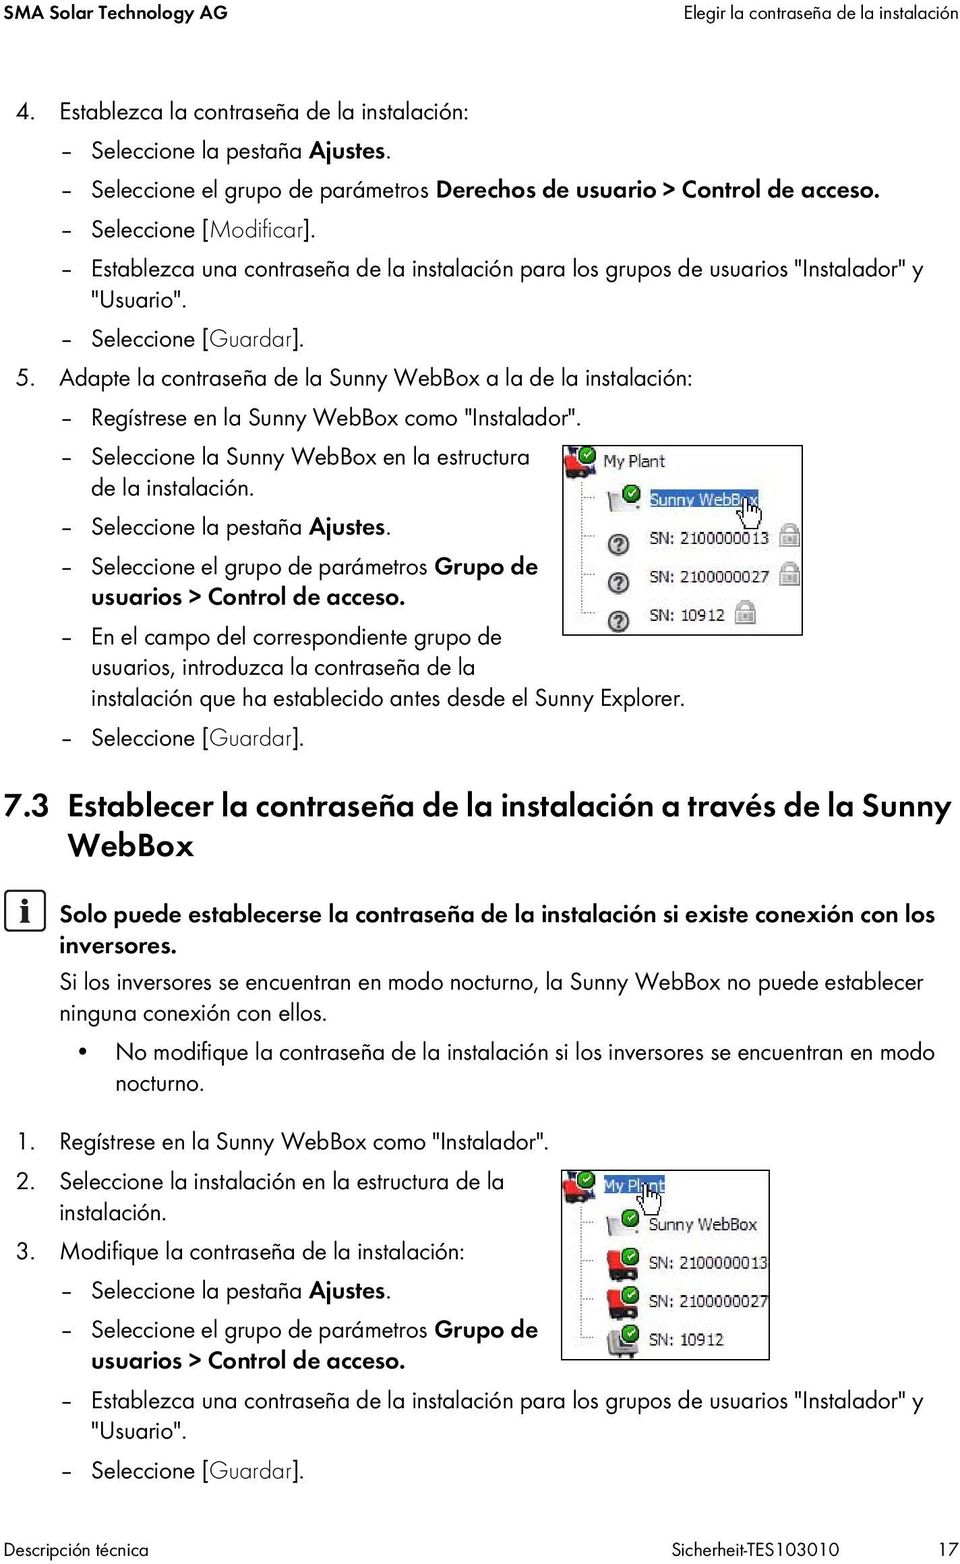 Seleccione [Guardar]. 5. Adapte la contraseña de la Sunny WebBox a la de la instalación: Regístrese en la Sunny WebBox como "Instalador". Seleccione la Sunny WebBox en la estructura de la instalación.